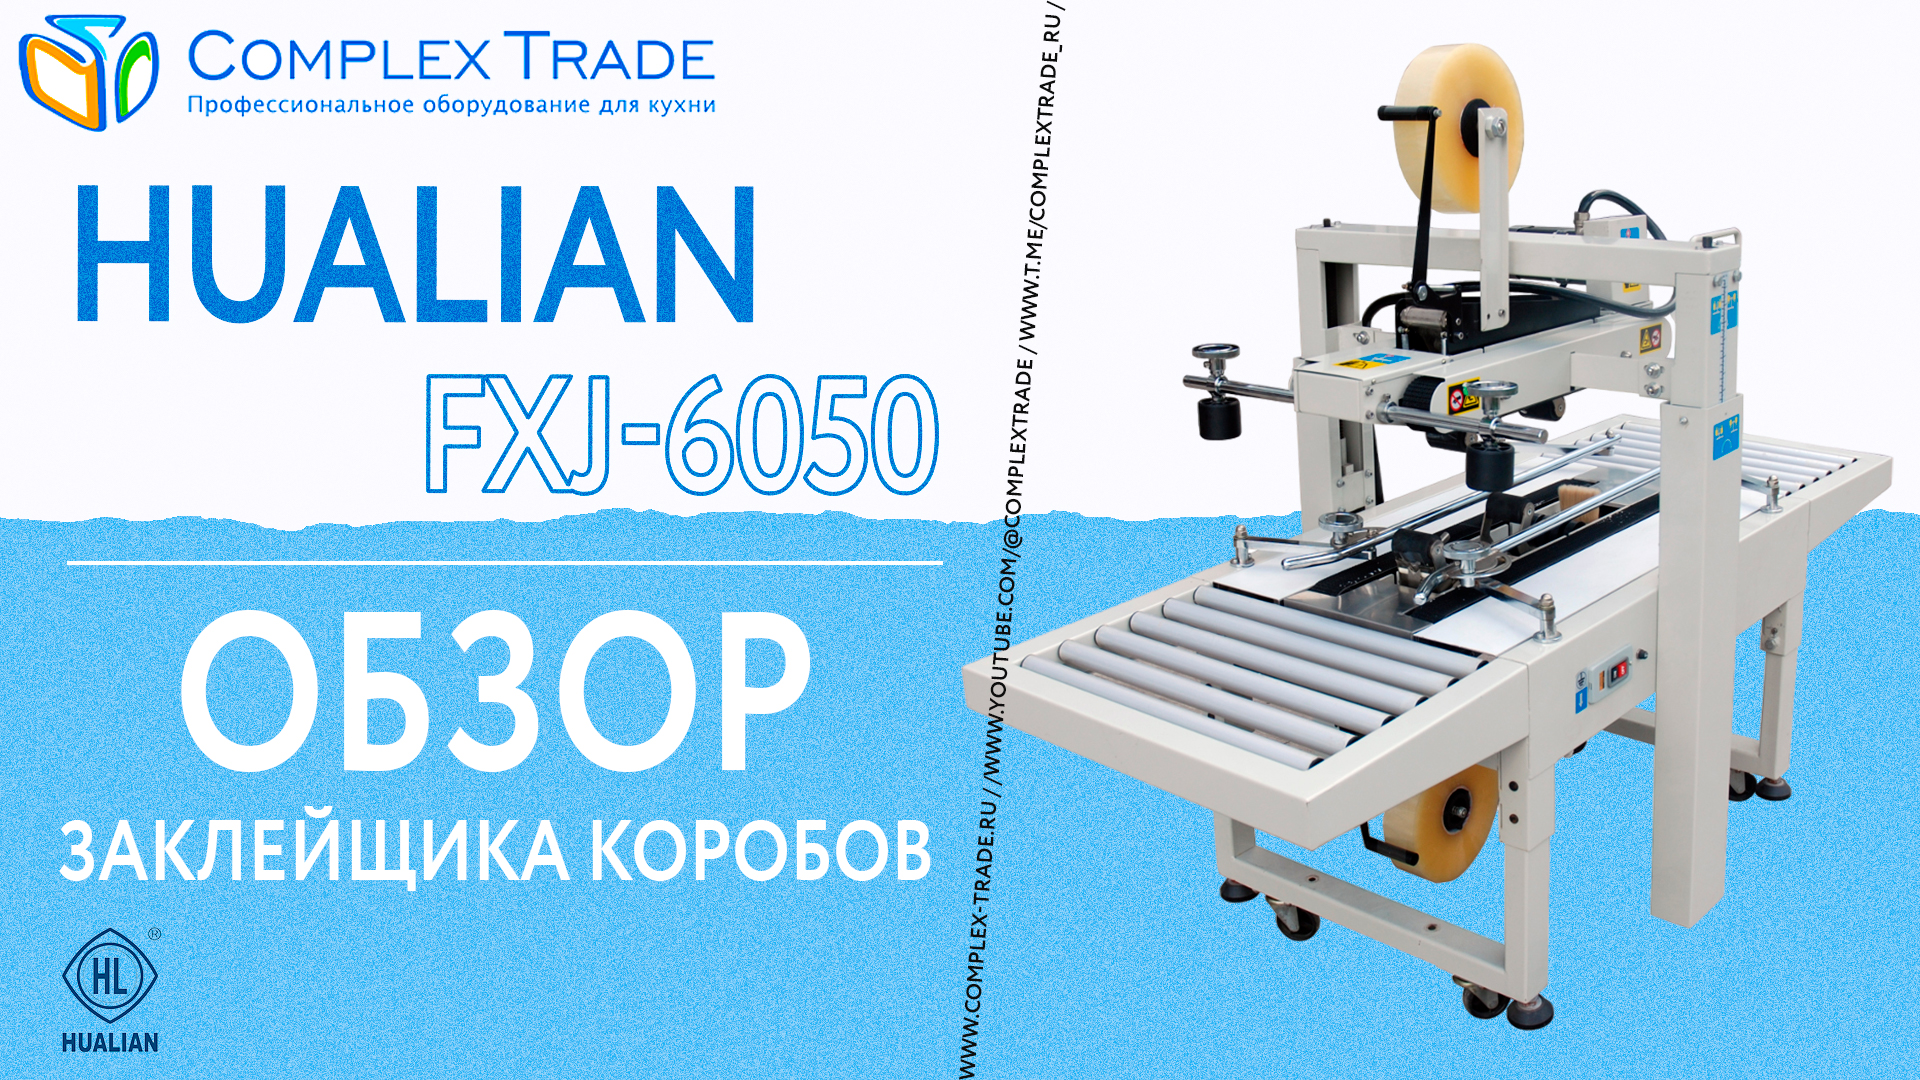 Hualian FXJ-6050 - Обзор заклейщика коробов